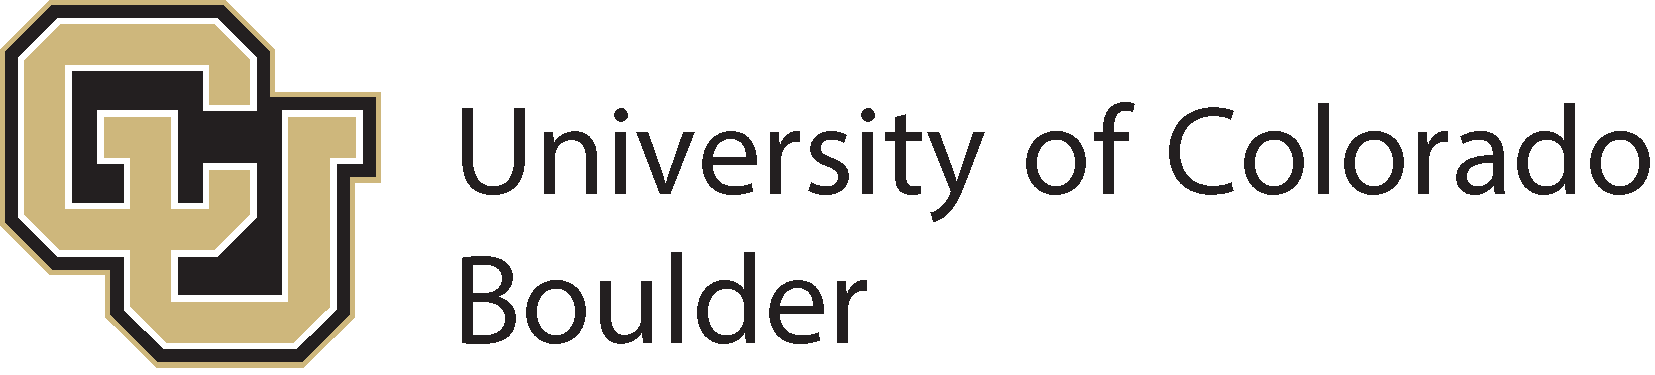 कोलोराडो विश्वविद्यालय बोल्डर लोगो (सीयू बोल्डर) - एसवीजी, पीएनजी, एआई, ईपीएस ...